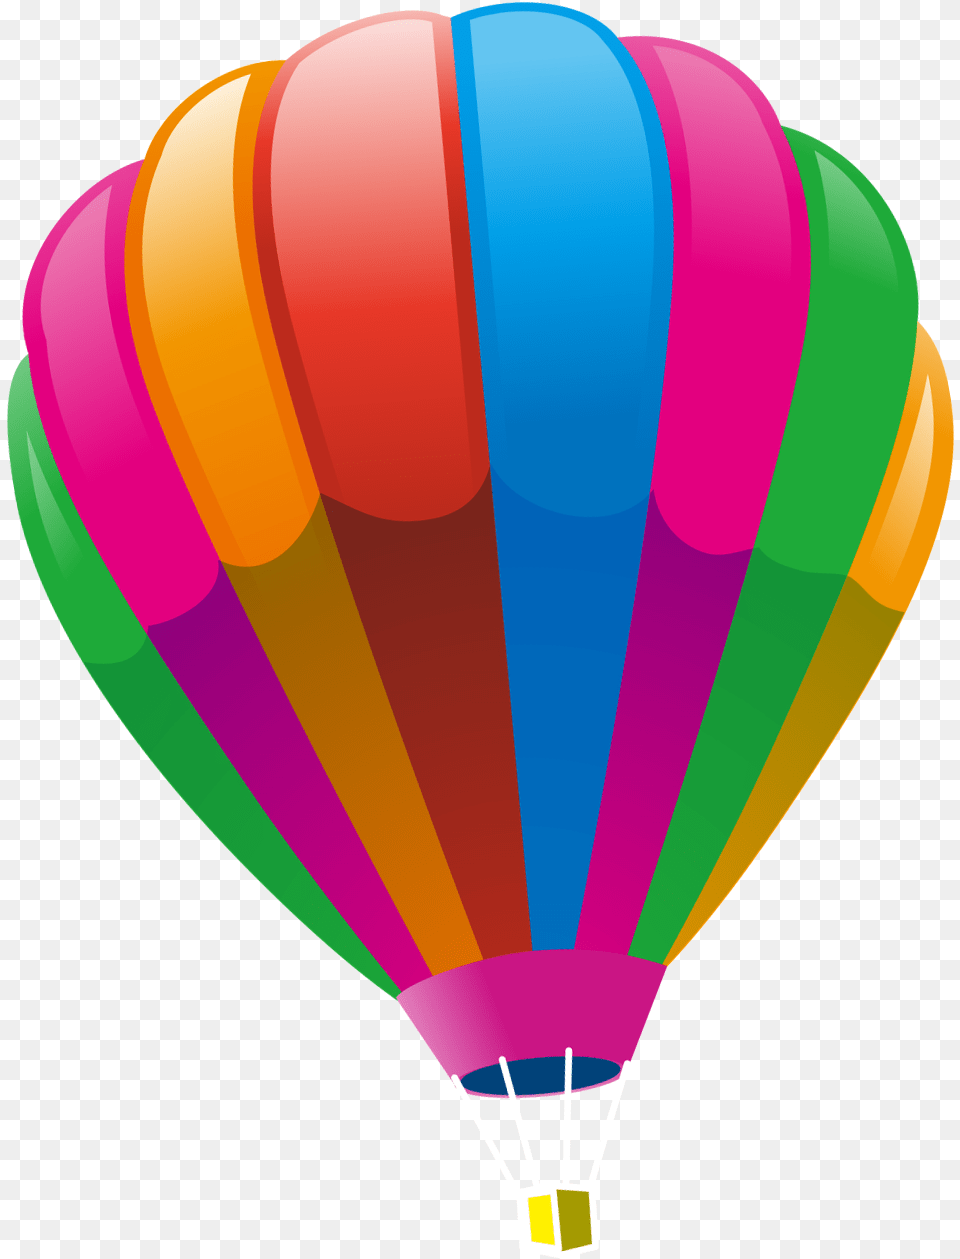 Hot Air Ballooning Hot Air Balloon, Aircraft, Transportation, Vehicle, Hot Air Balloon Free Png Download